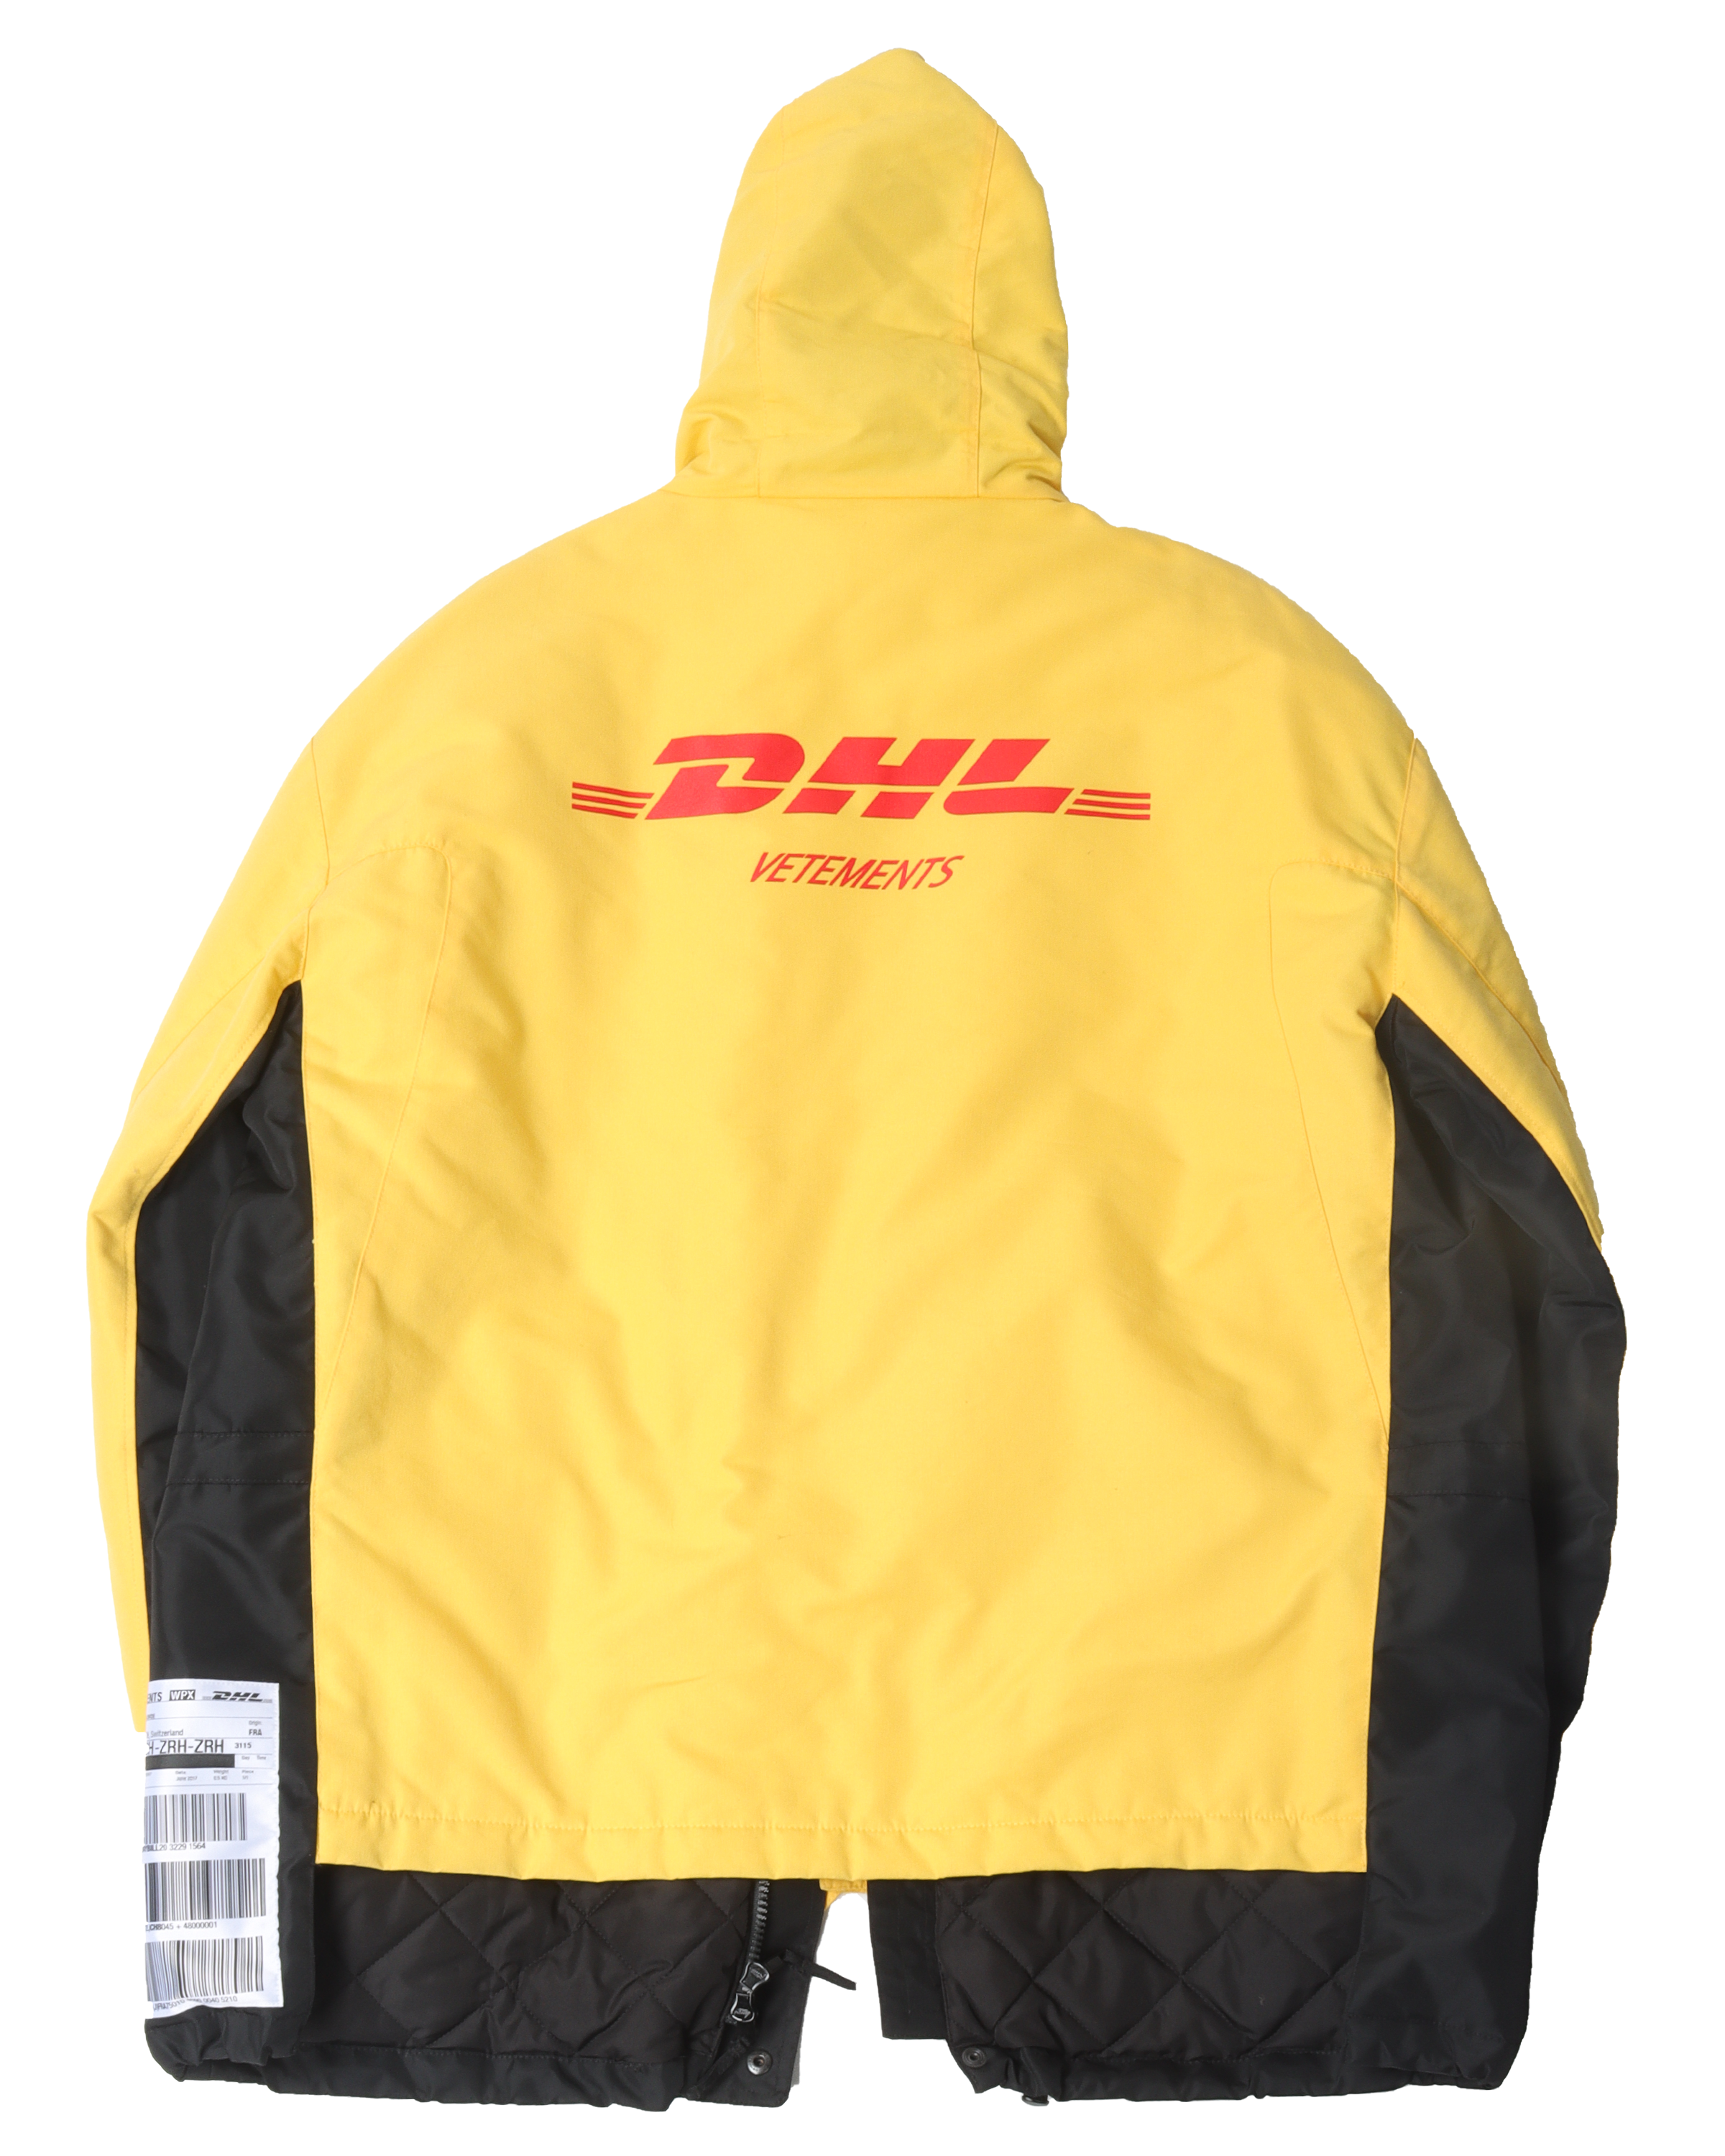 SS18 DHL Jacket